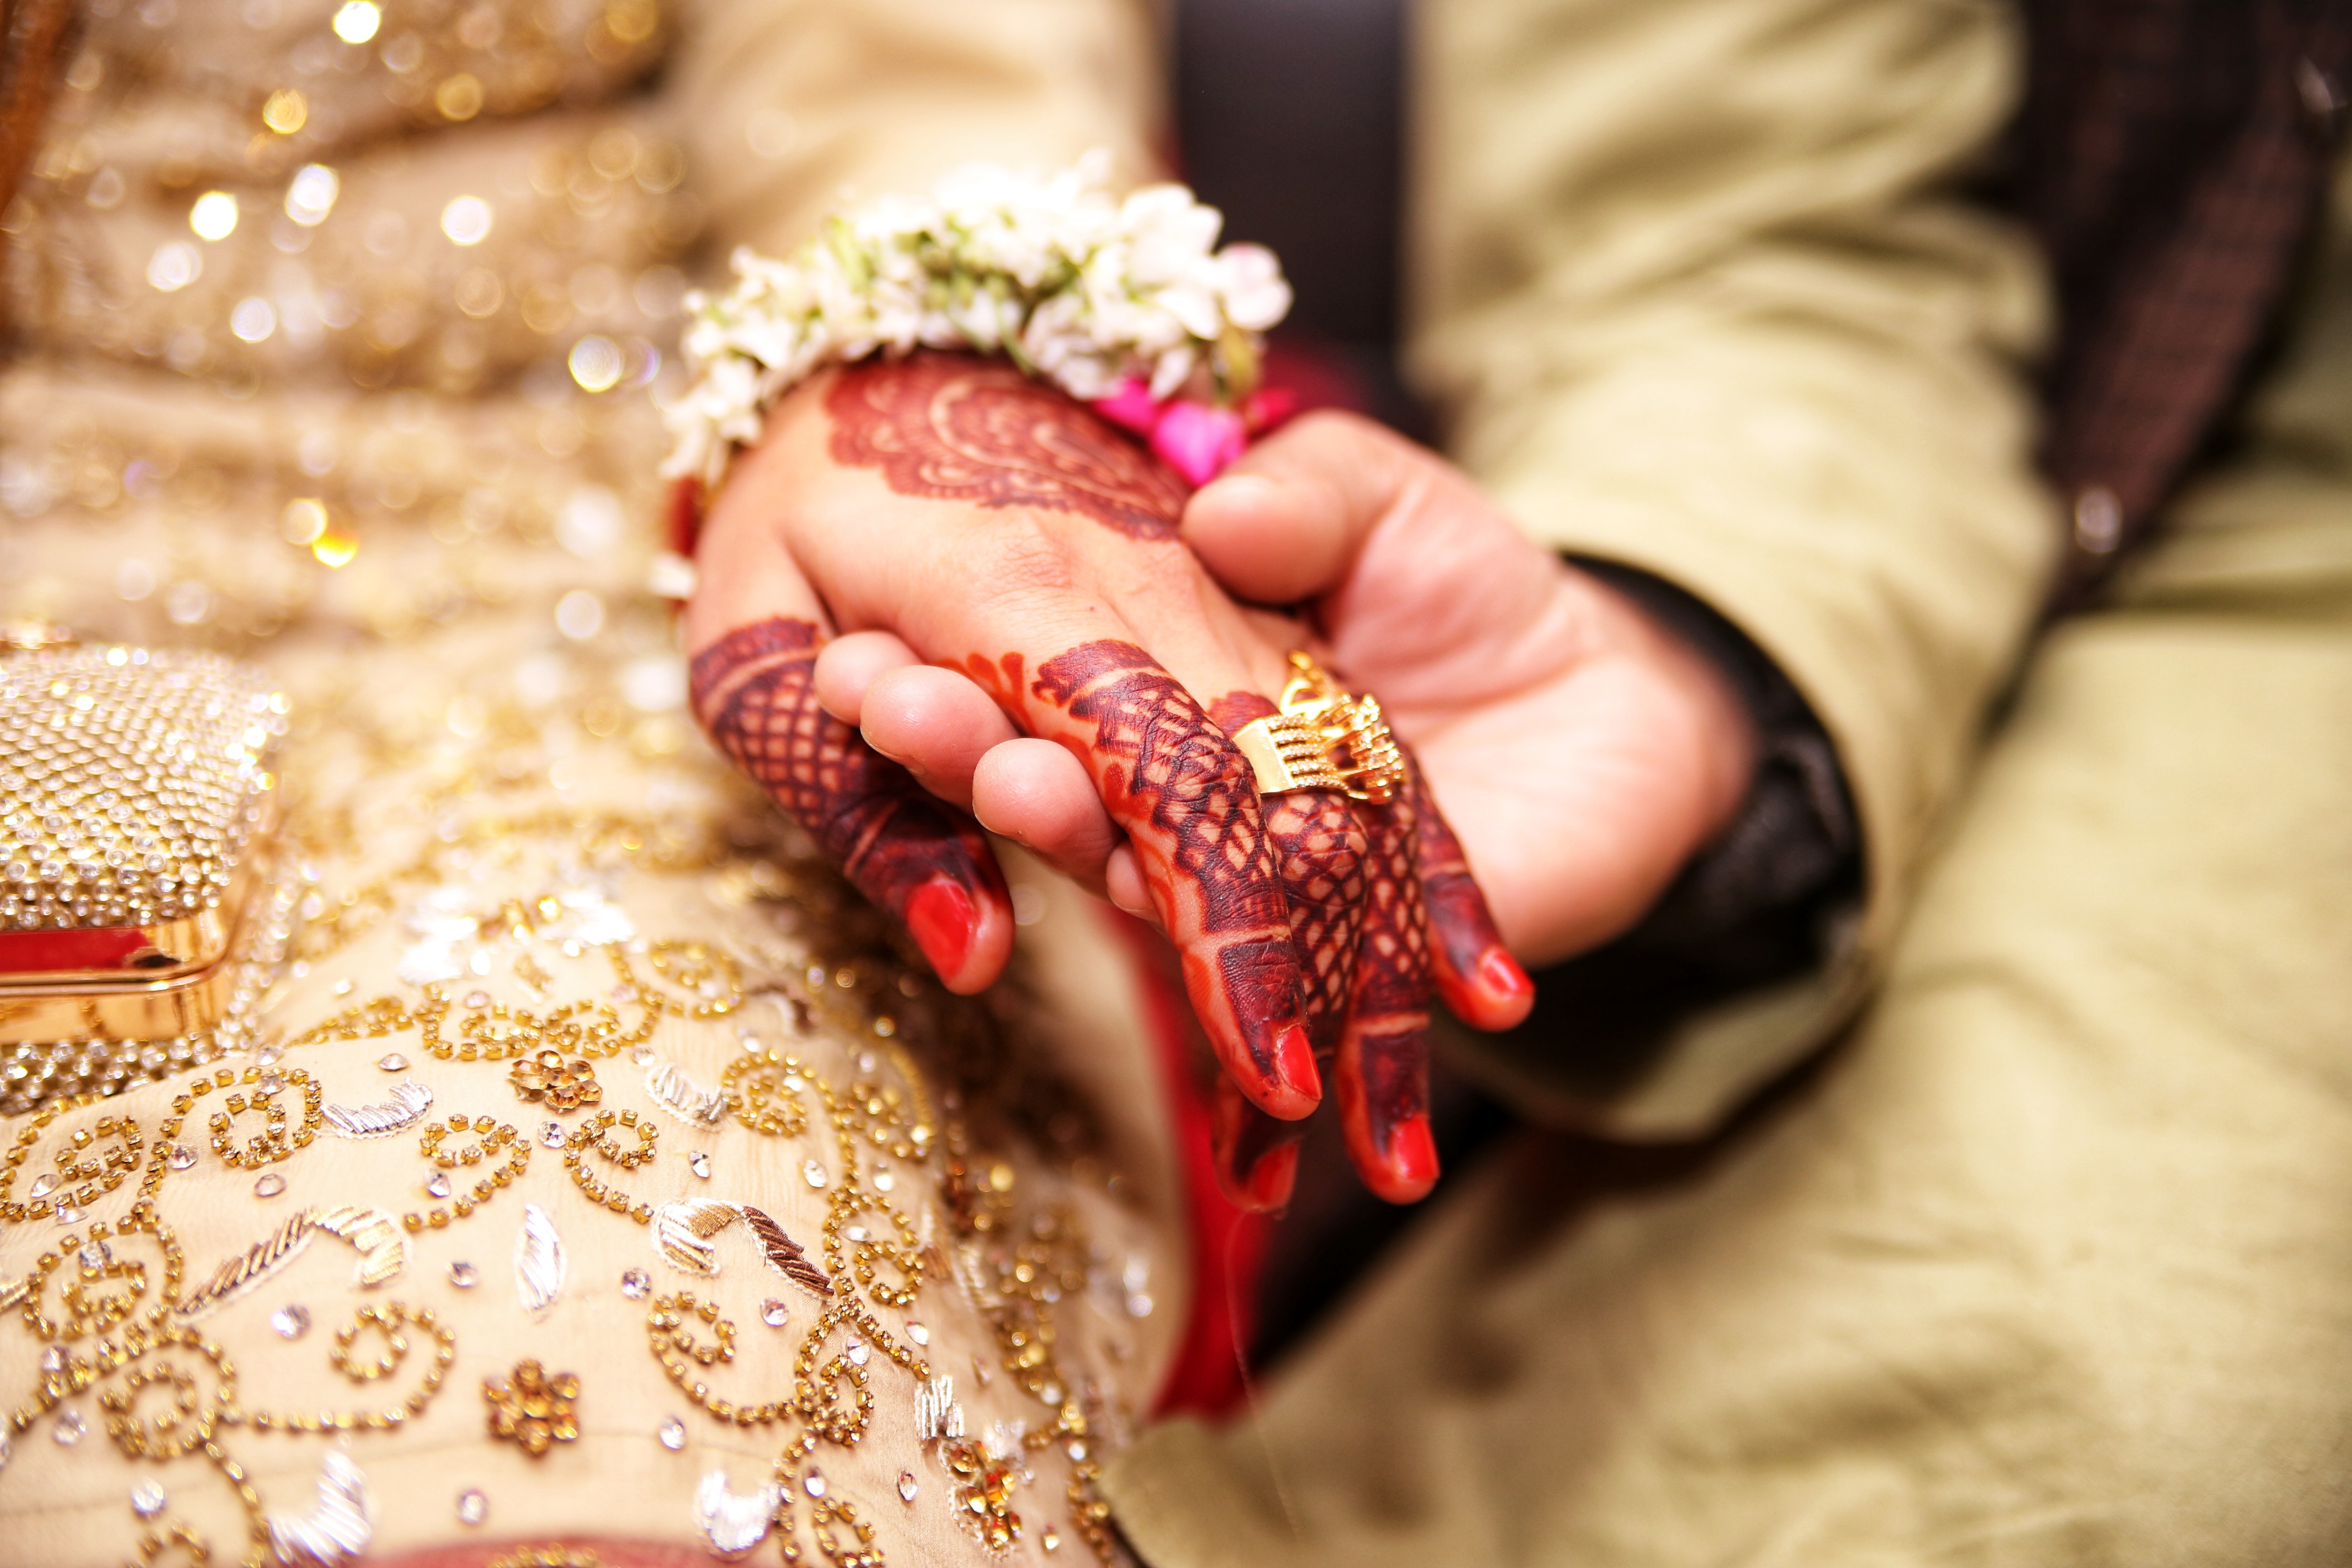 En Inde, le mariage des enfants demeure préoccupant